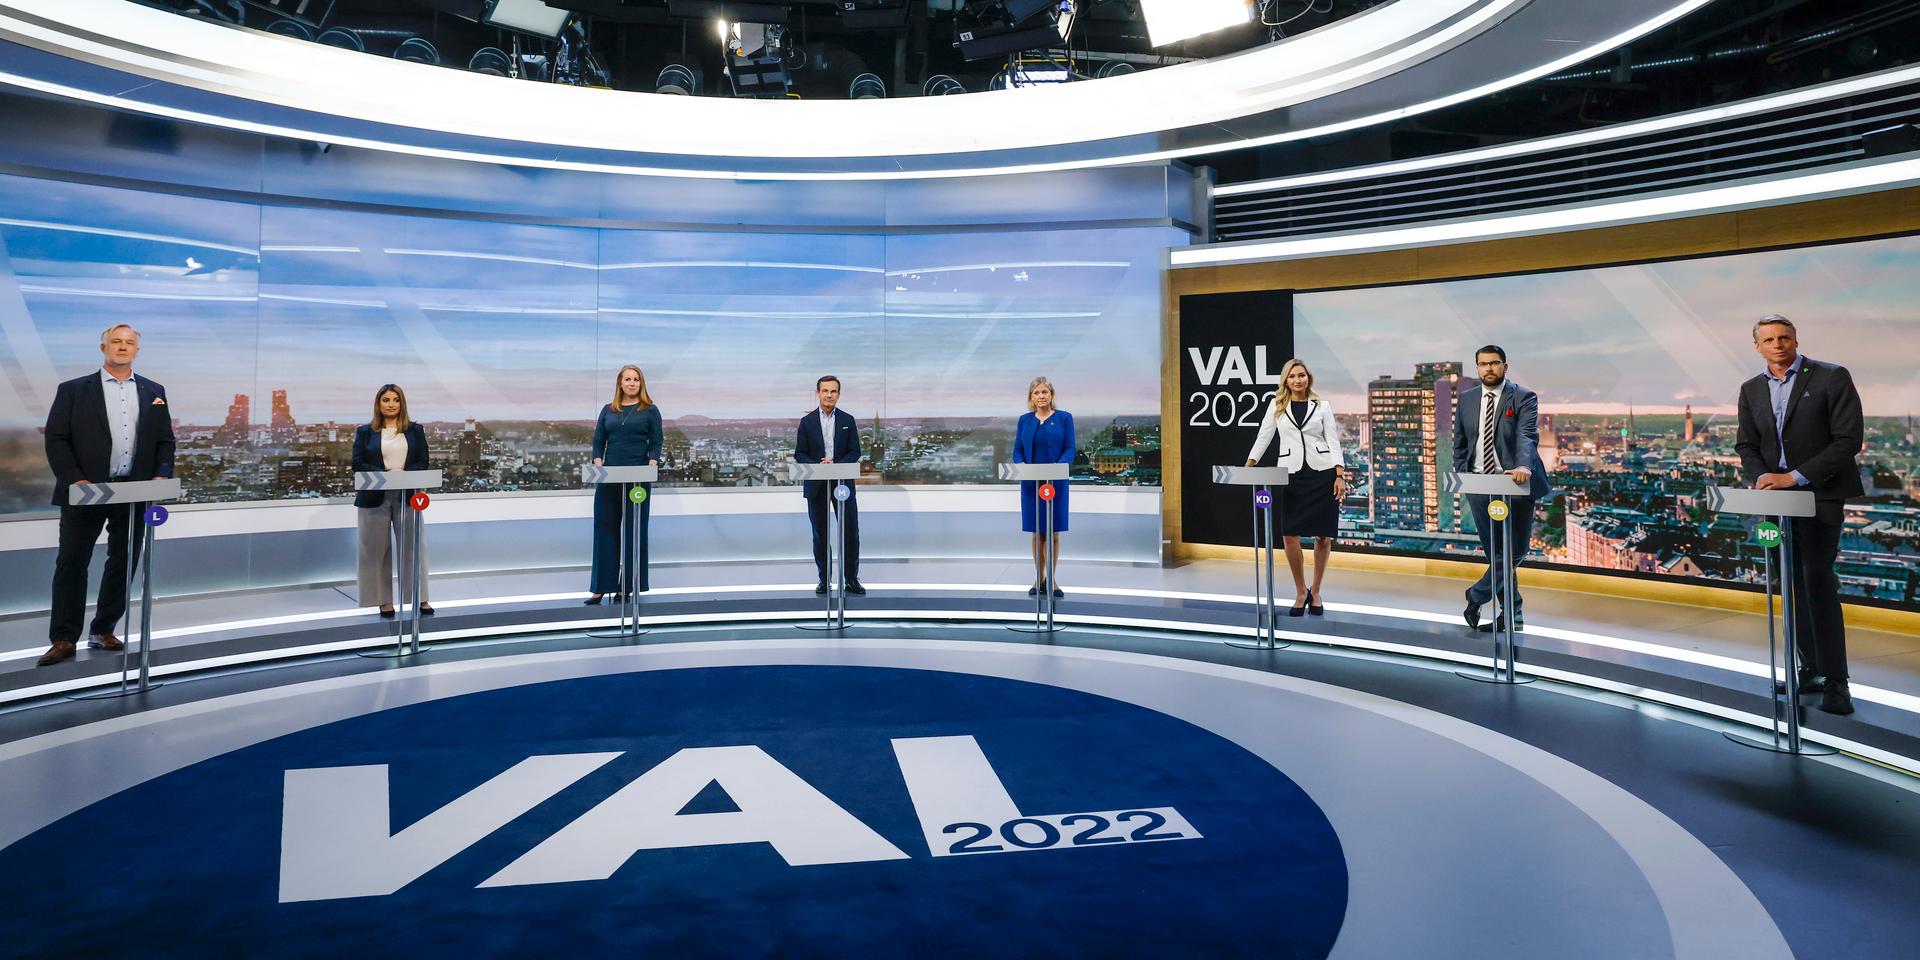 Debatt. Med mindre än hundra dagar kvar till valet debatterade partiledarna i TV4.